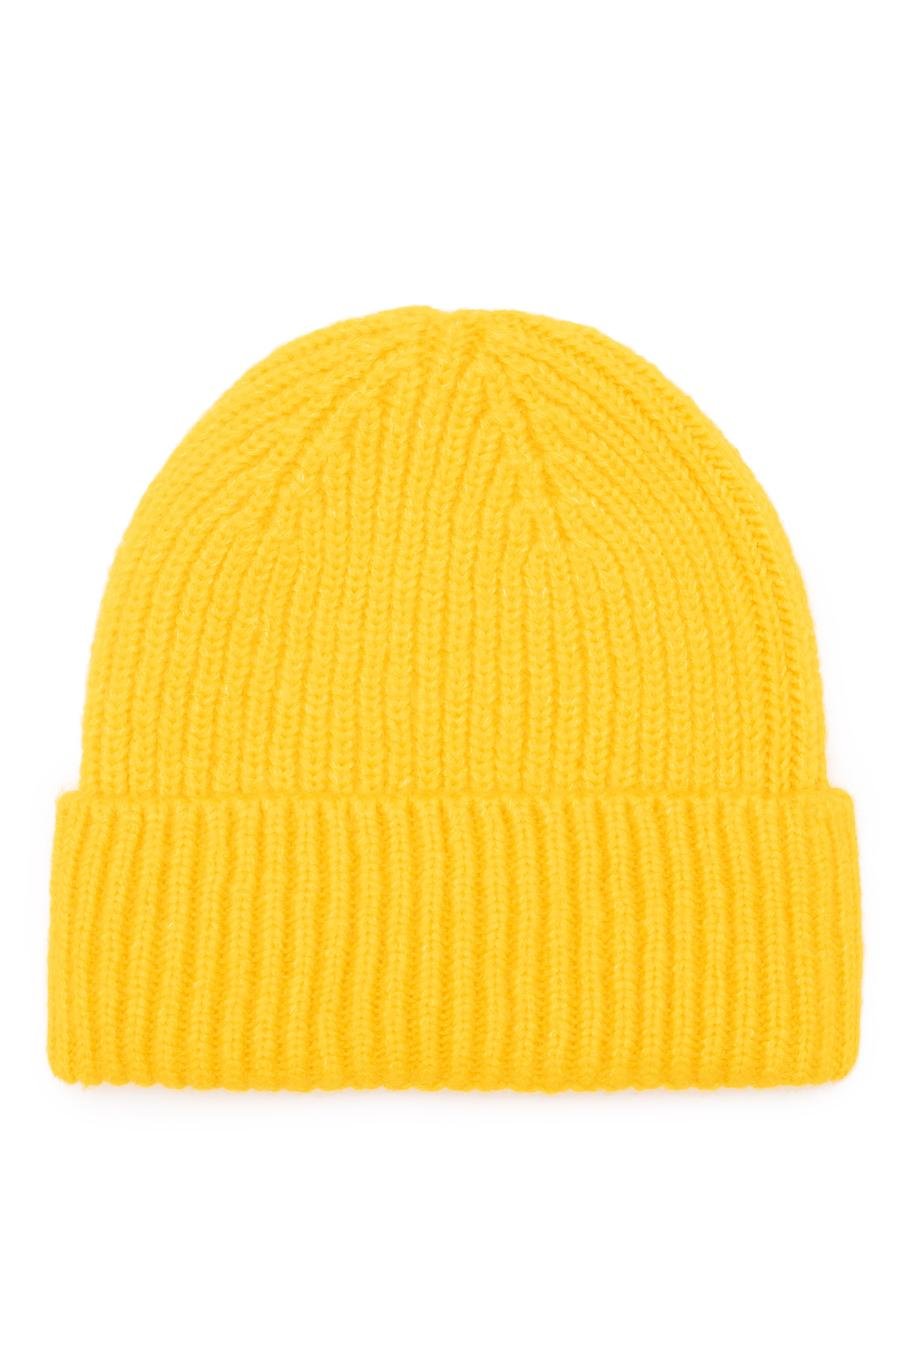 کلاه  زرد  استاندارد  مردانه  پیرکاردین